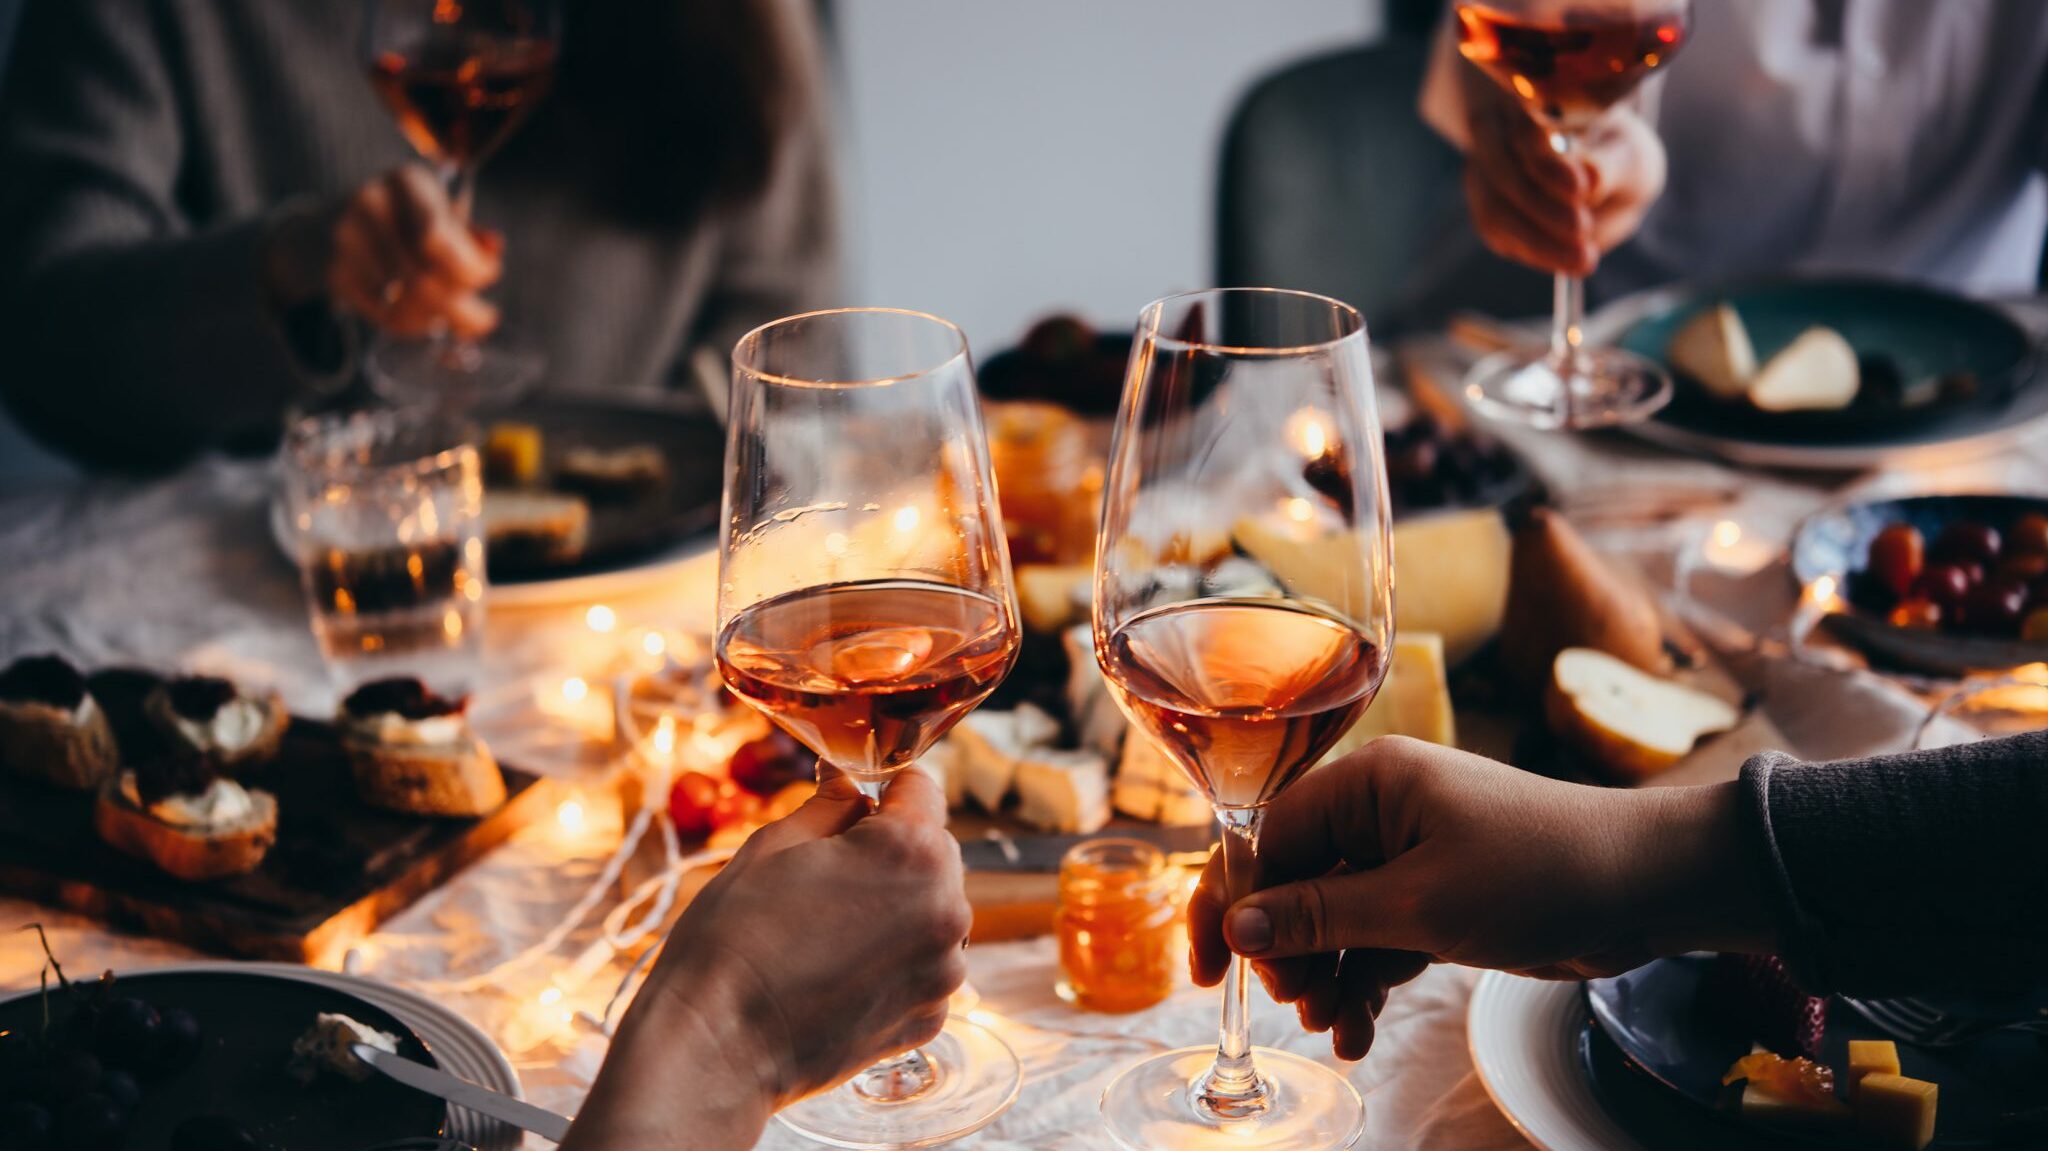 Открытая дегустация вин для всех желающих в ресторане Italy на Московском -  Taste project